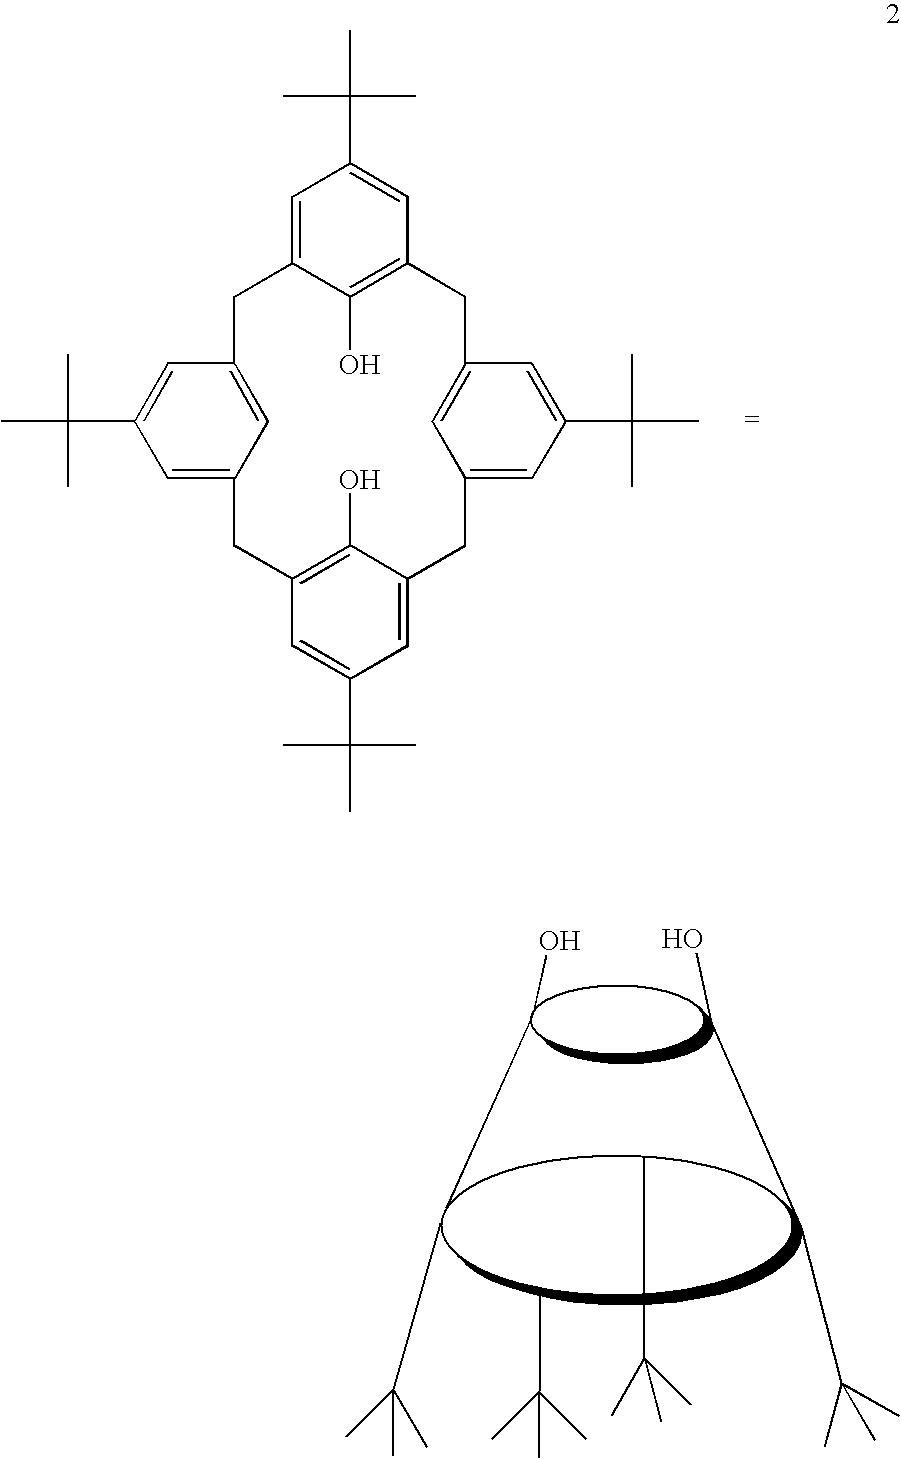 Olefin polymerization catalysts based on hydroxyl-depleted calixarene ligands